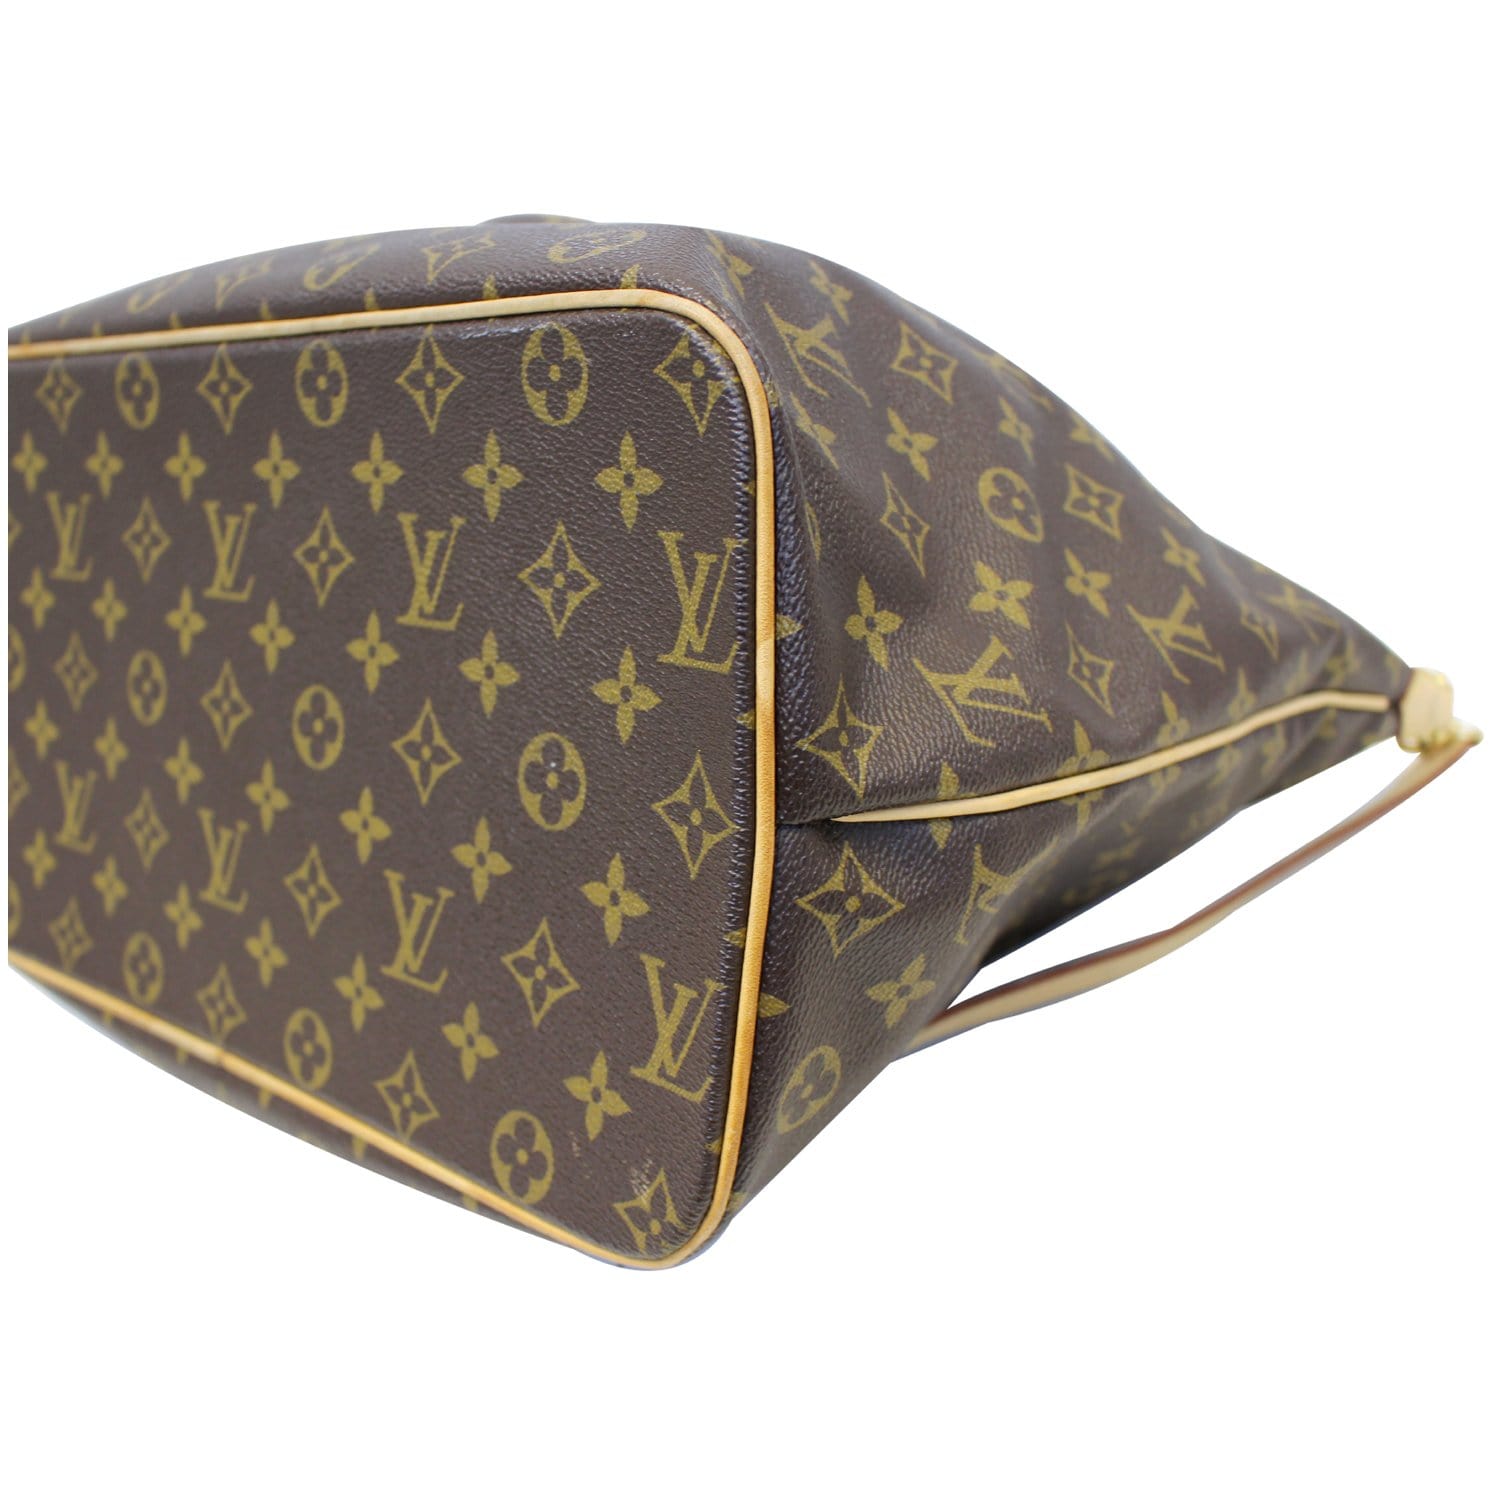 Authentic Louis Vuitton Palermo Gm Monogram Tote/Shoulder Bag